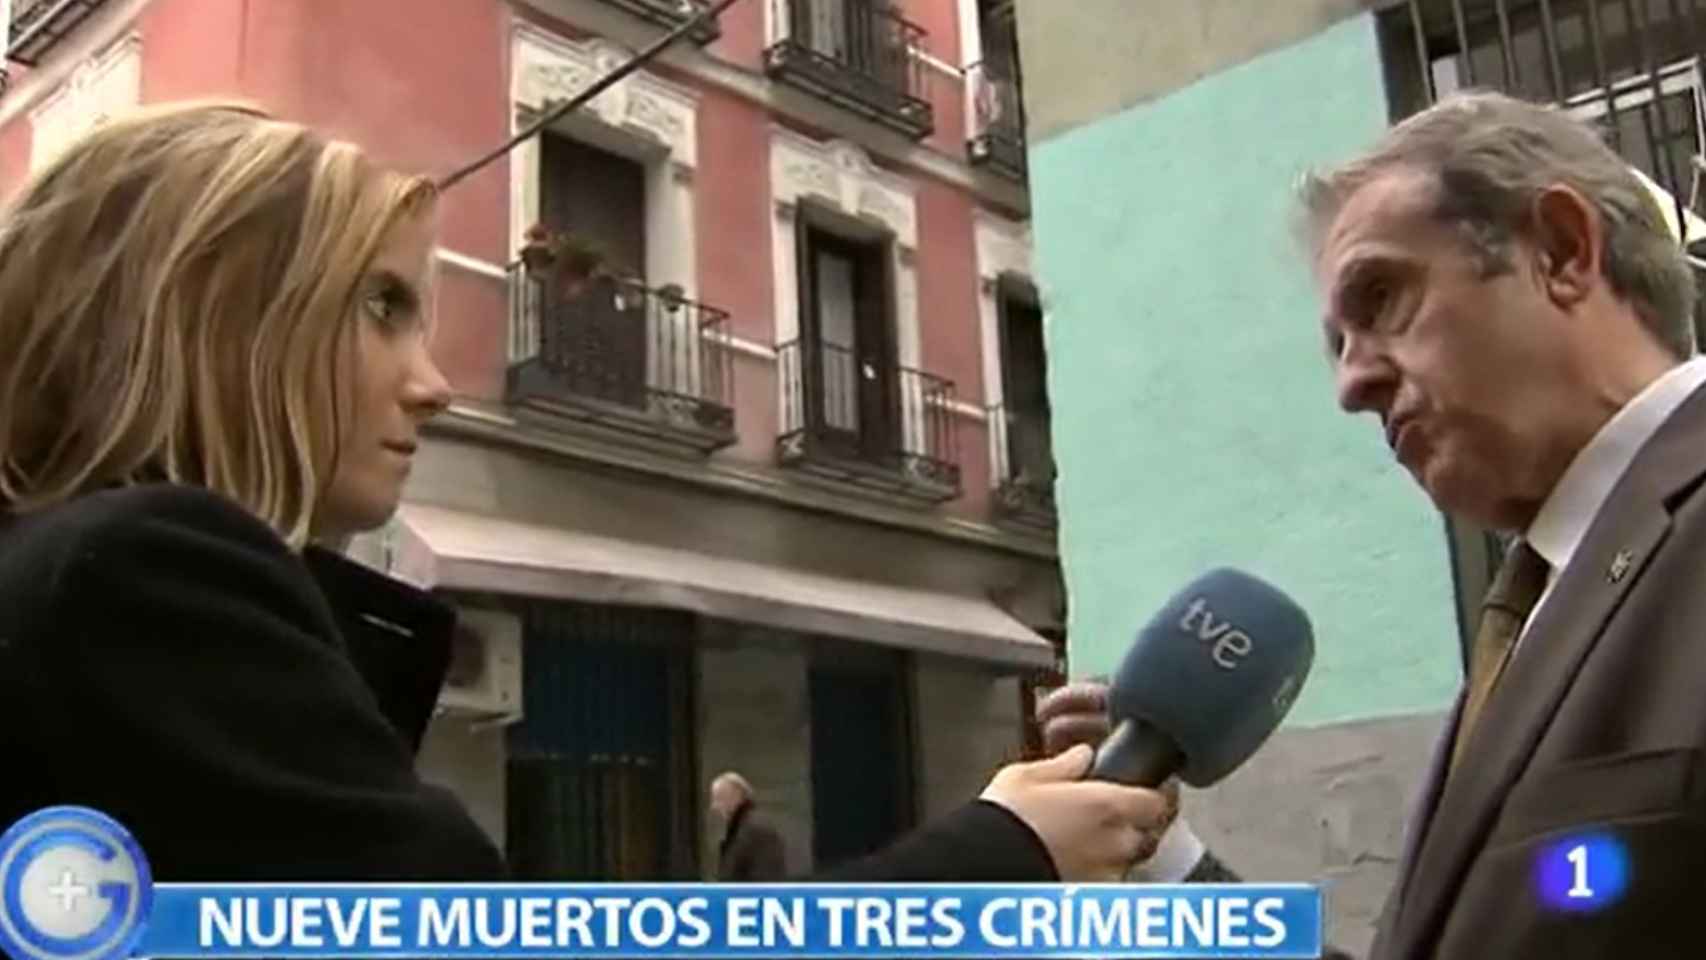 Juan Rada explica delante del edificio a TVE los crímenes que tuvieron lugar en menos de dos décadas.